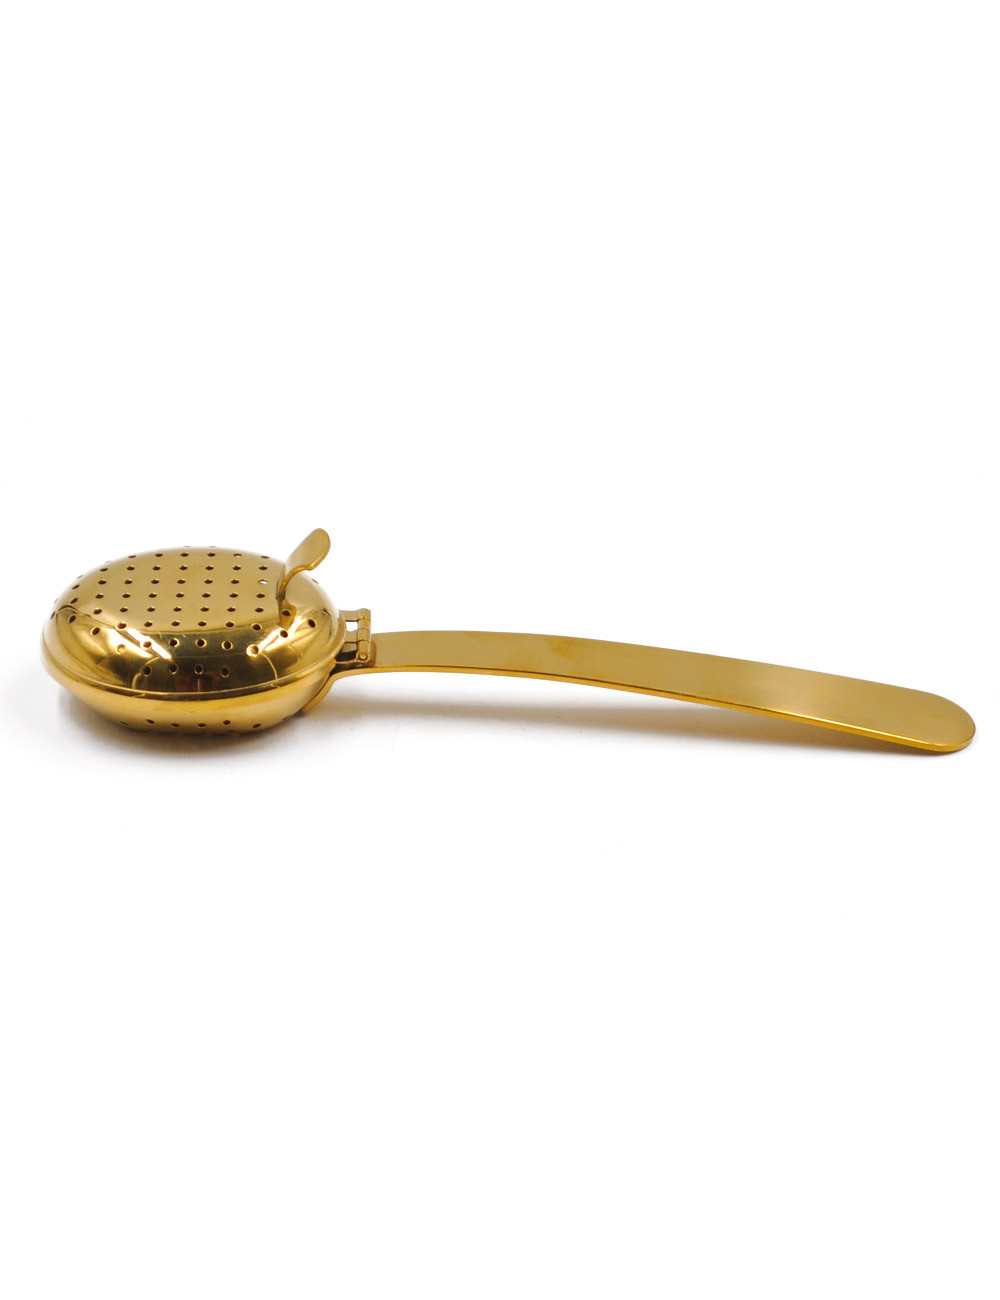 Cucchiaio dosatore e infusore per tè e tisane in acciaio Inox color oro - La Pianta del Tè acquista online